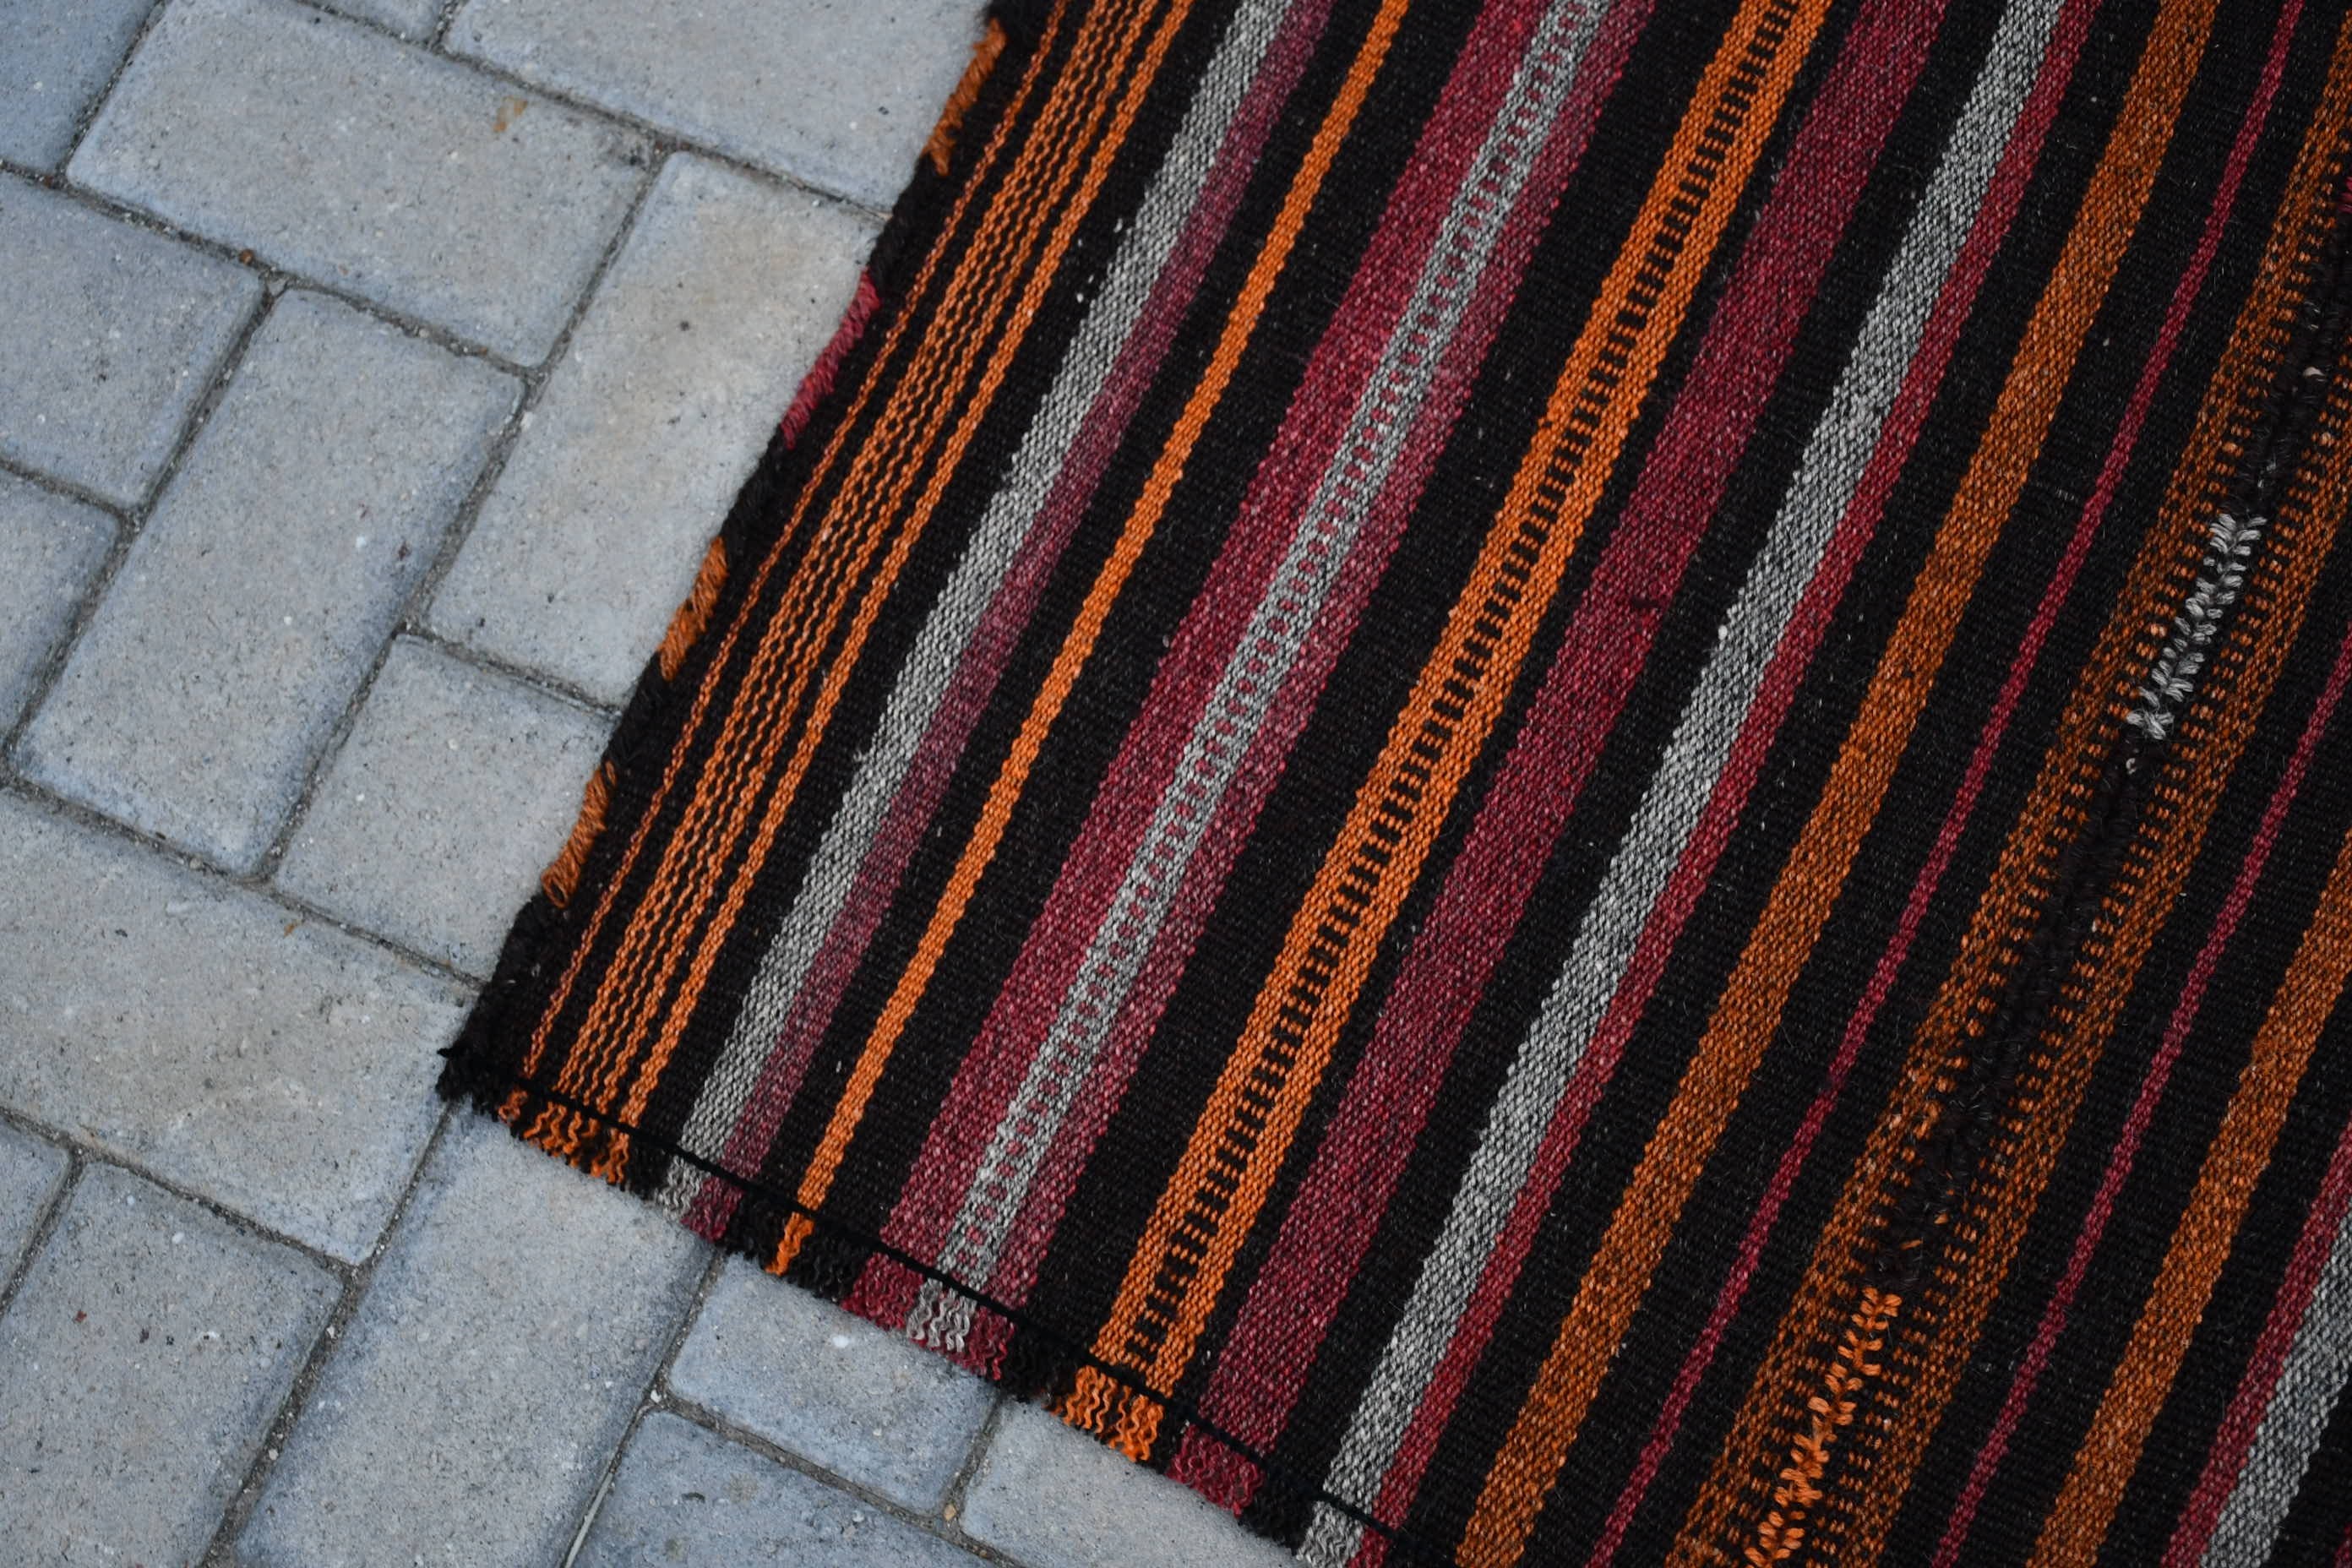 Turkish Rug, Vintage Rug, 5.9x8.5 ft Large Rugs, Salon Rug, Bedroom Rug, Brown Antique Rug, Home Decor Rug, Dorm Rug, Kilim, Oriental Rugs